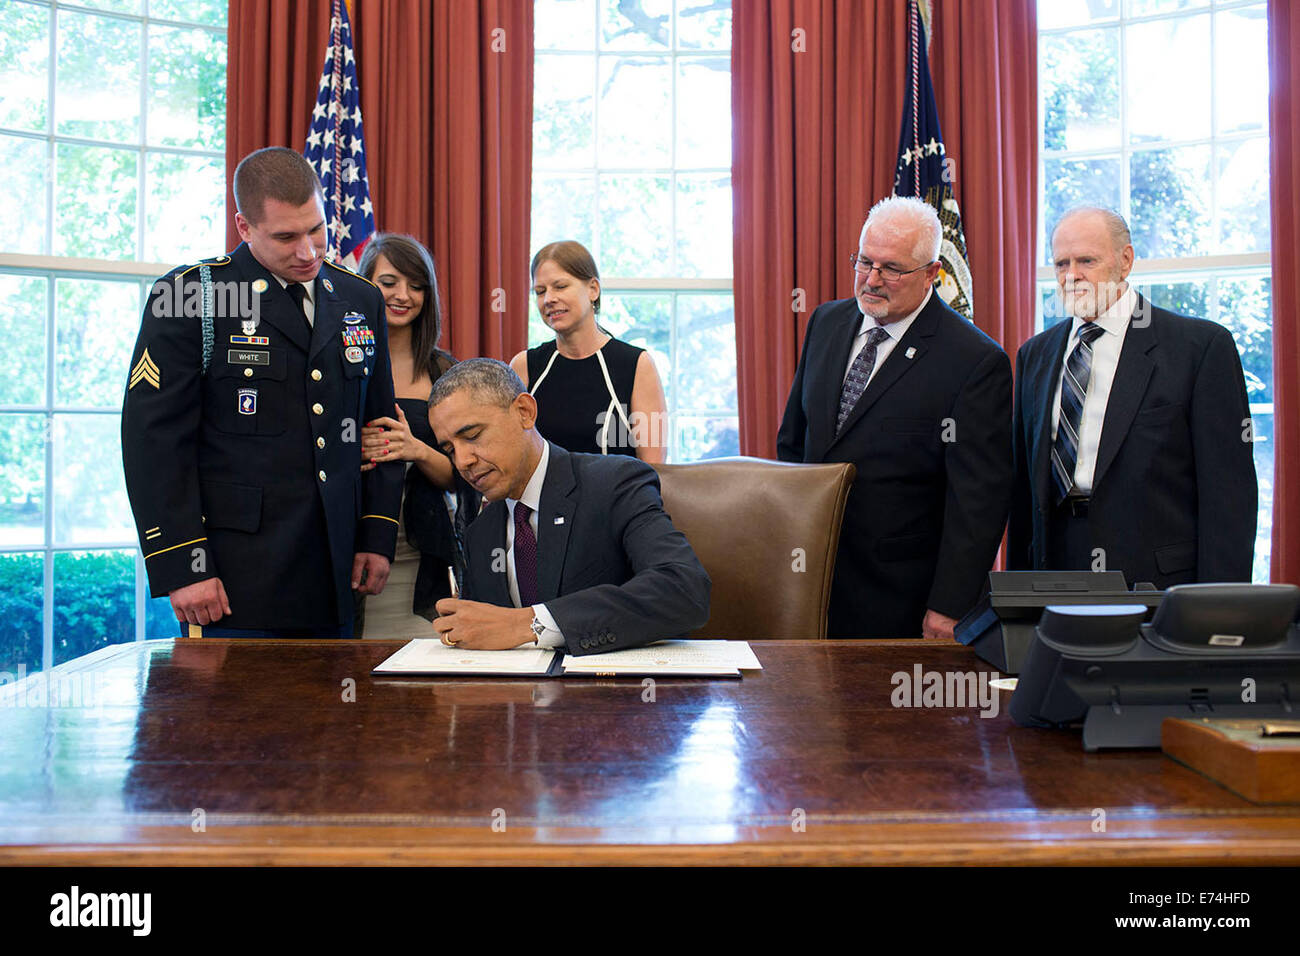 Präsident Barack Obama unterzeichnet die Medal Of Honor Award Quellenangabe Sergeant Kyle J. White Stockfoto